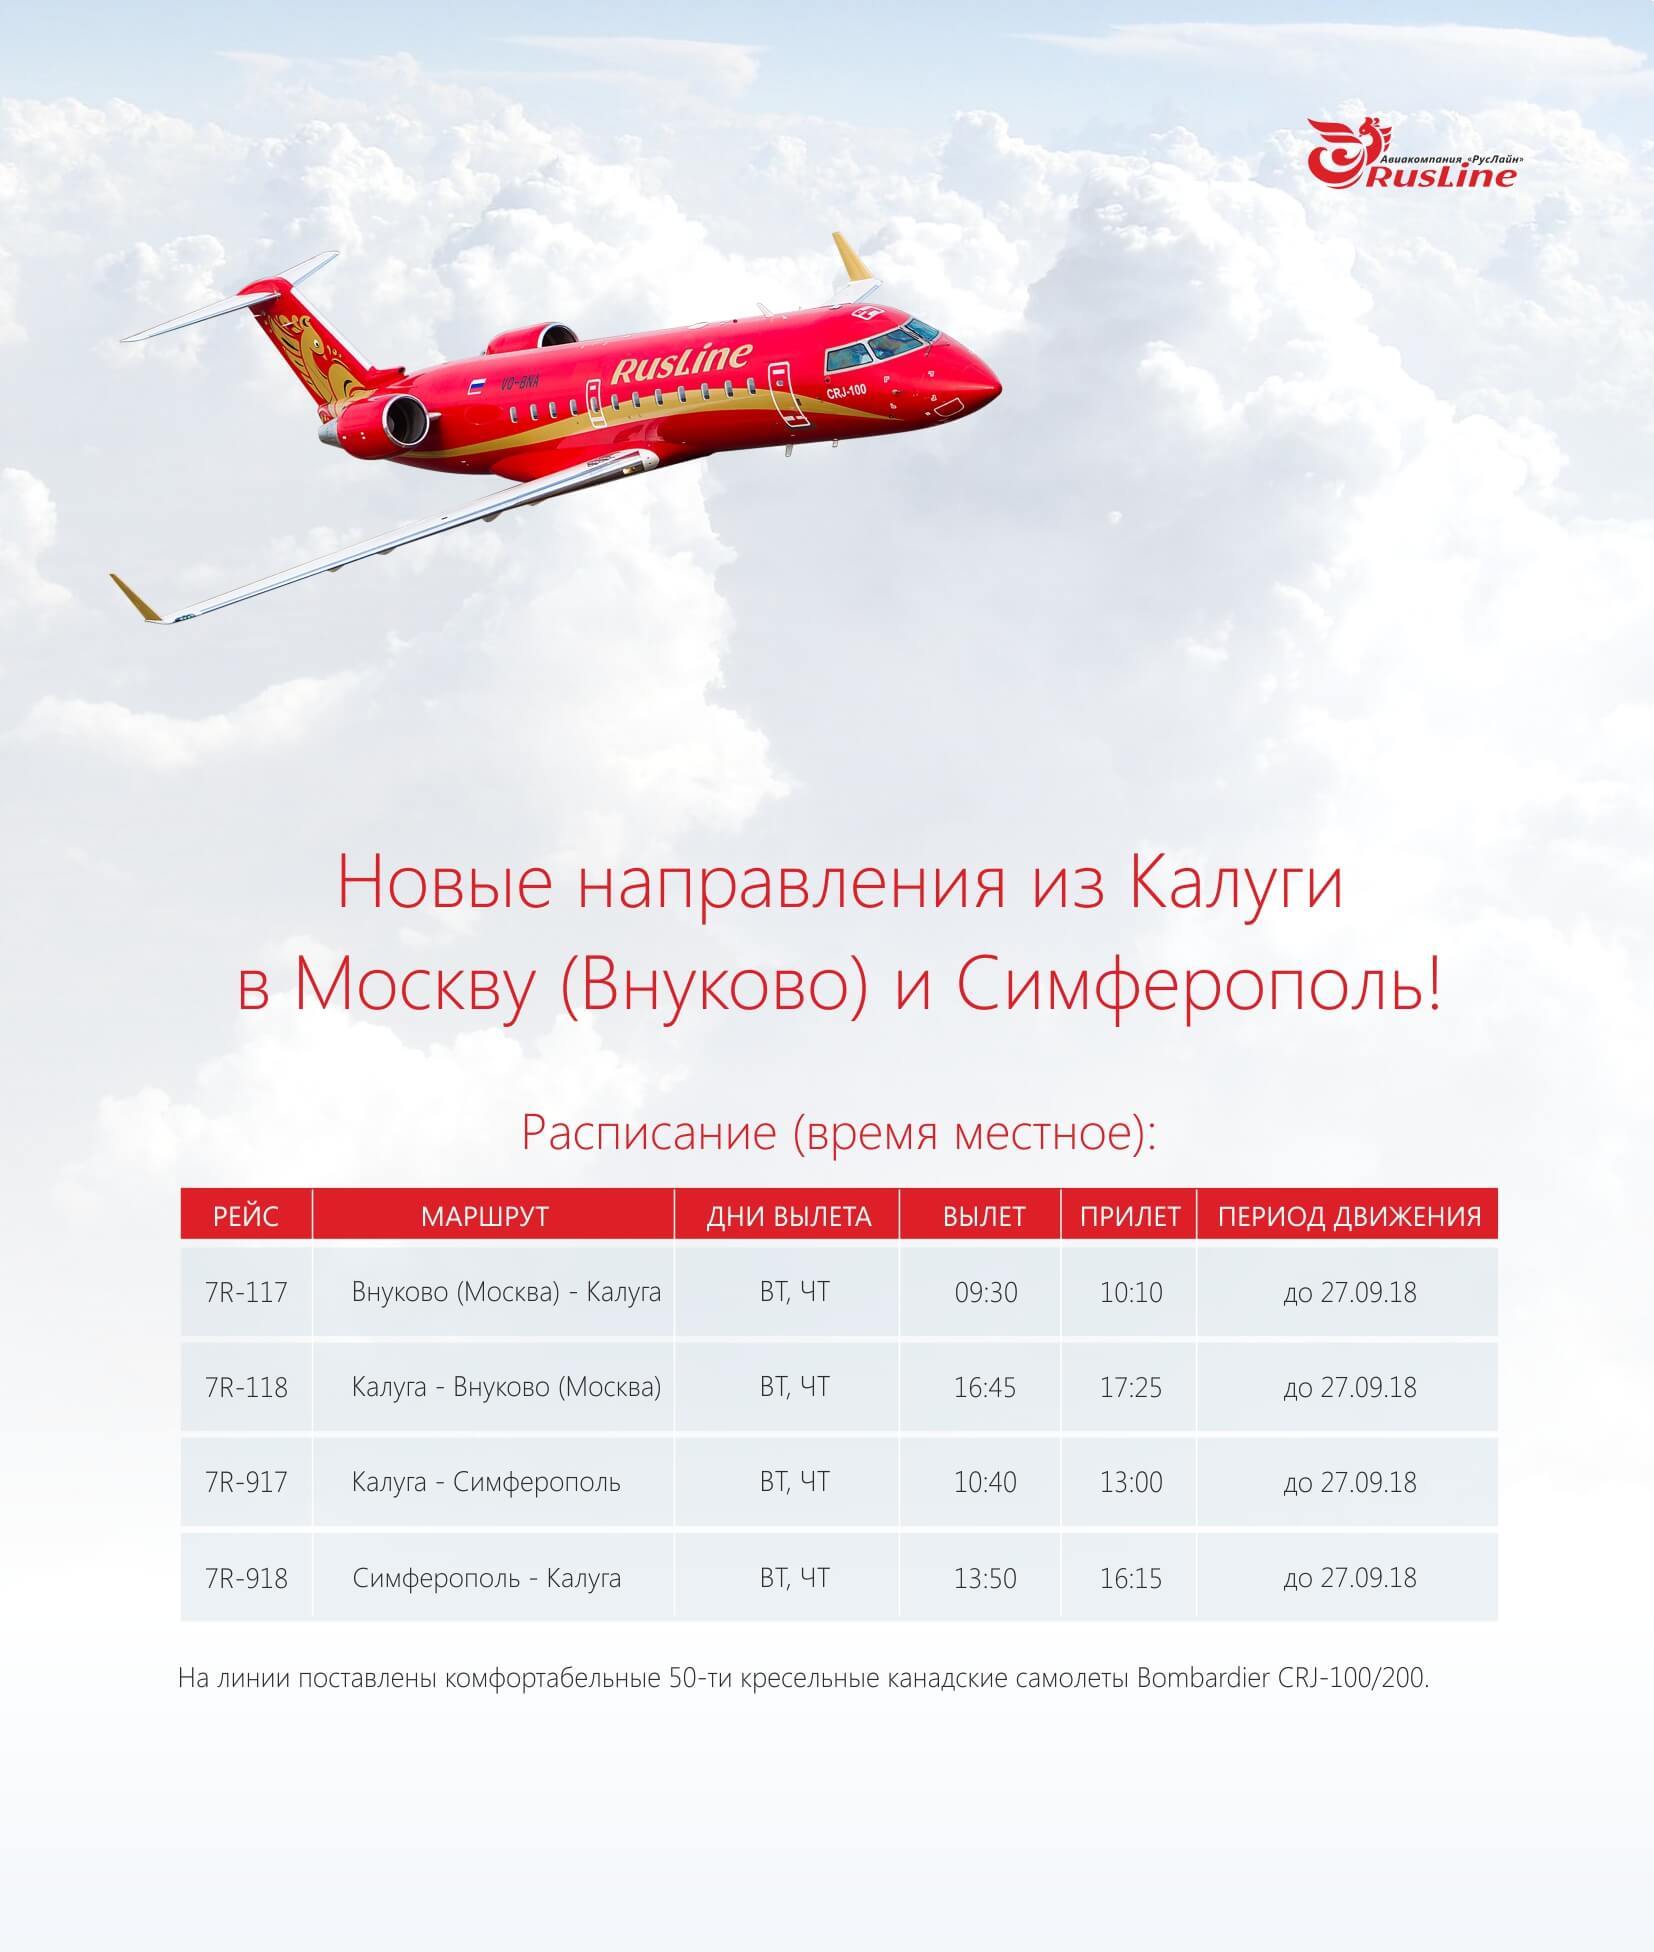 Авиакомпания руслайн (rusline) — авиакомпании и авиалинии россии и мира